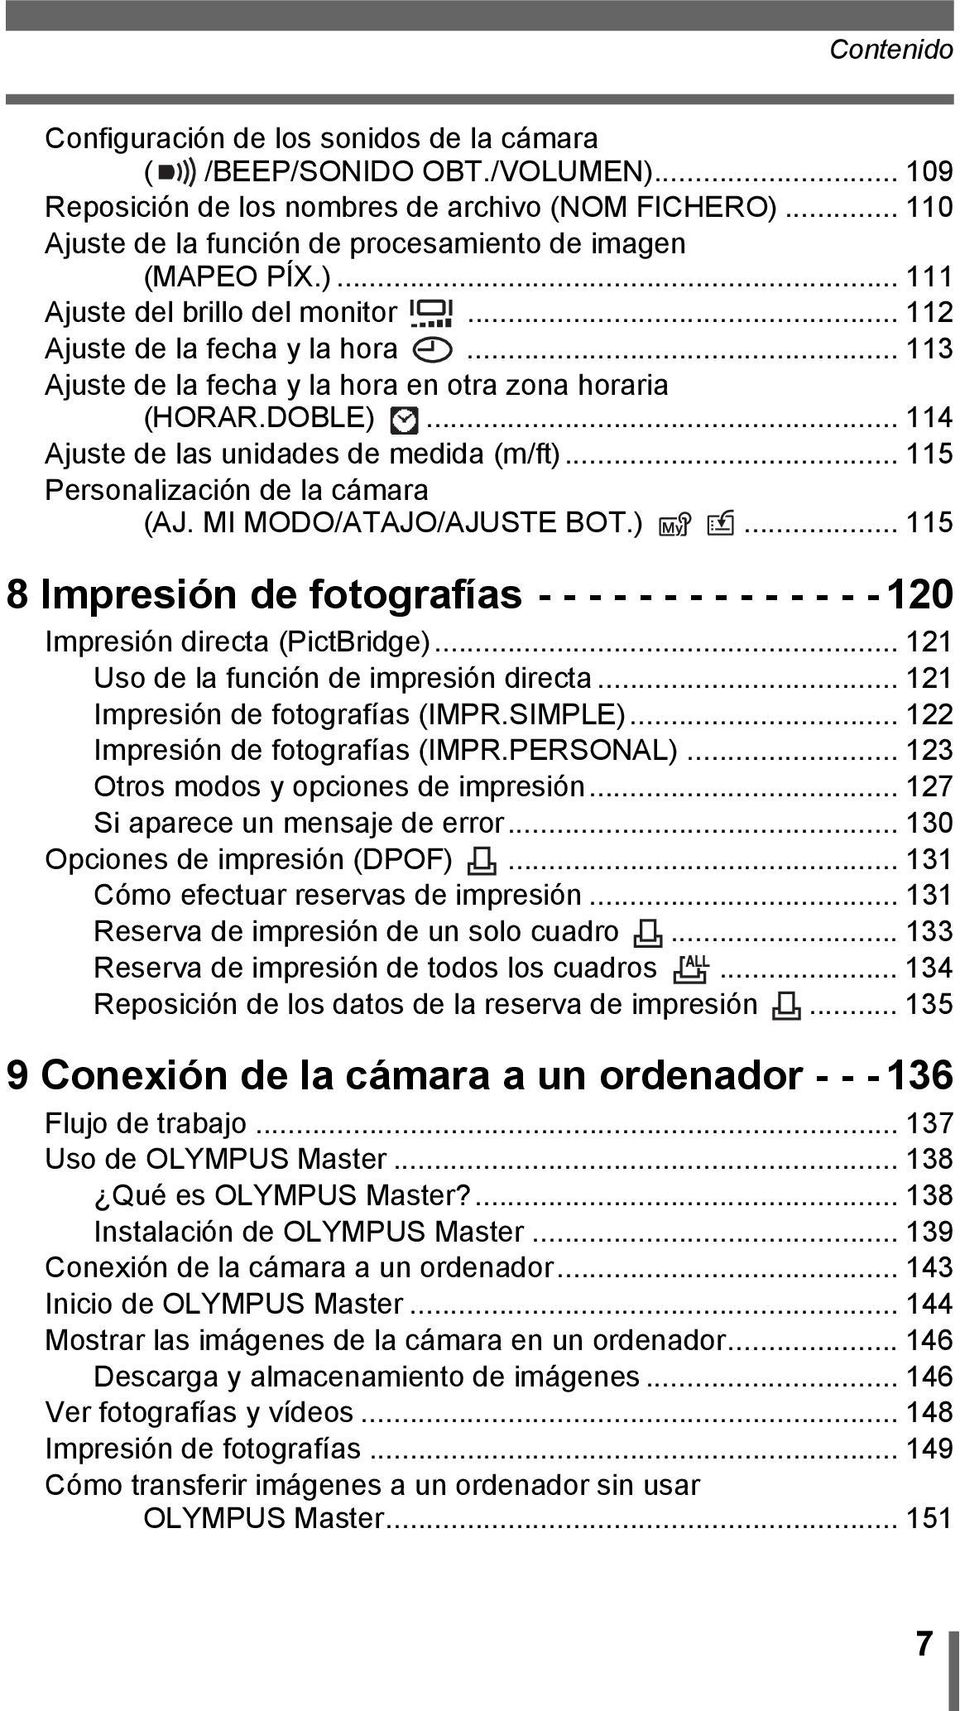 .. 113 Ajuste de la fecha y la hora en otra zona horaria (HORAR.DOBLE)... 114 Ajuste de las unidades de medida (m/ft)... 115 Personalización de la cámara (AJ. MI MODO/ATAJO/AJUSTE BOT.)... 115 8 Impresión de fotografías - - - - - - - - - - - - - - 120 Impresión directa (PictBridge).